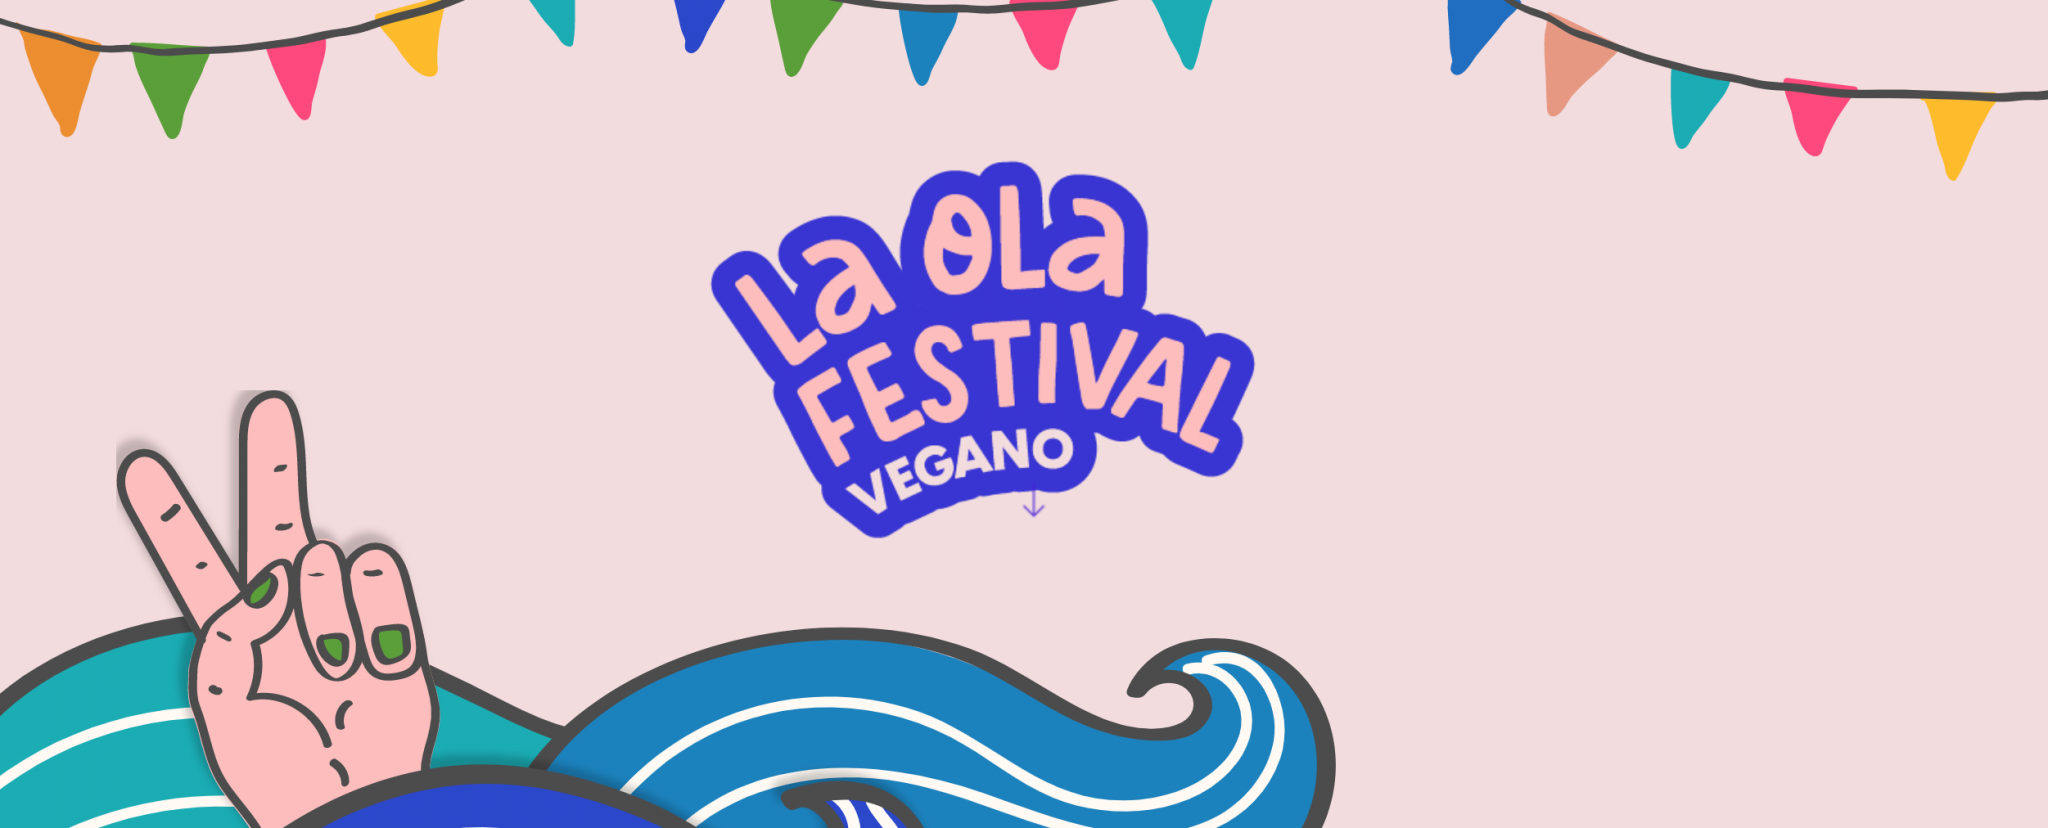 La segunda edición de "La ola festival vegano" llega el 12 y 13 de